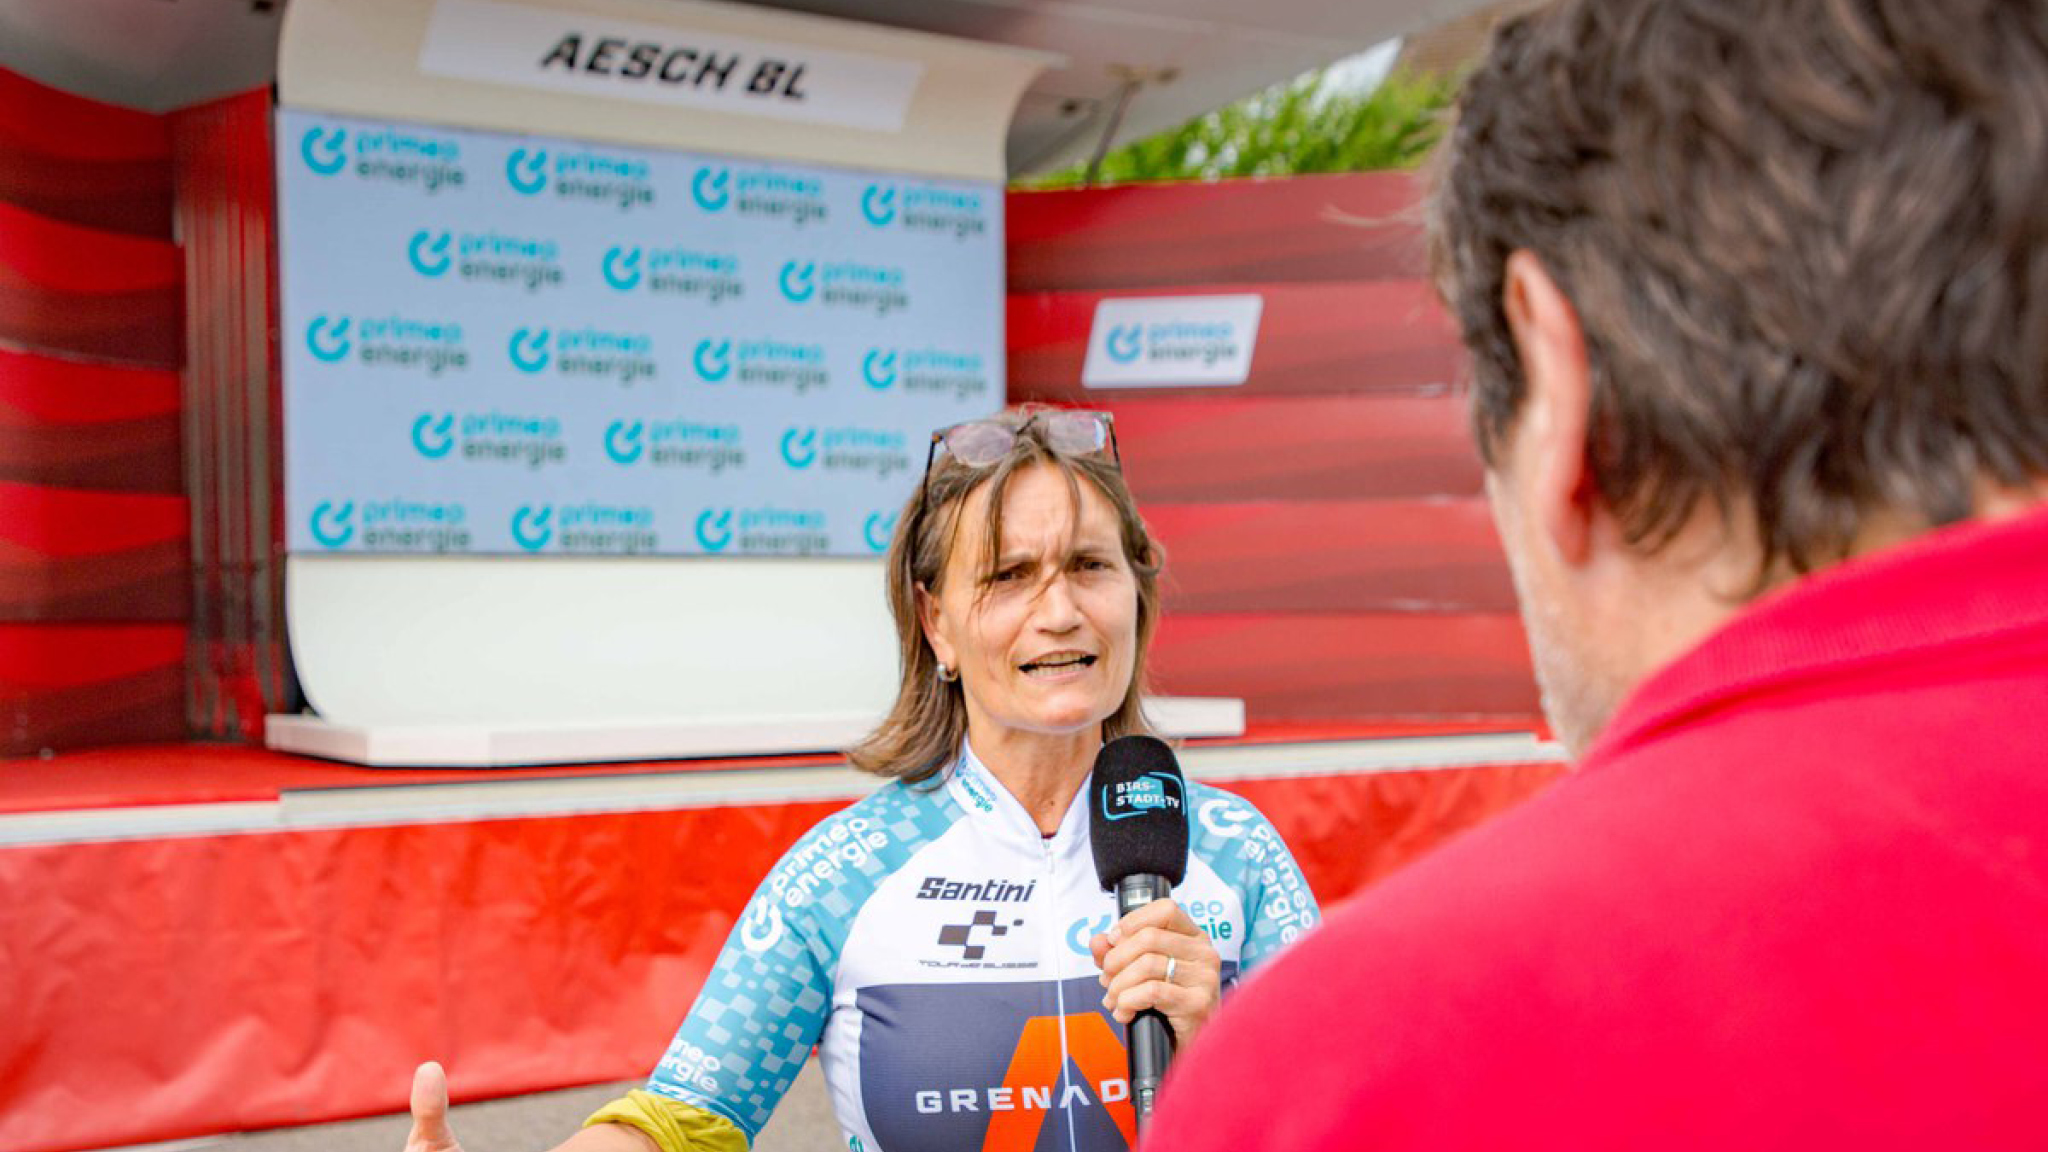 Eveline Sprecher, Gemeindepräsidentin von Aesch BL an der Tour de Suisse